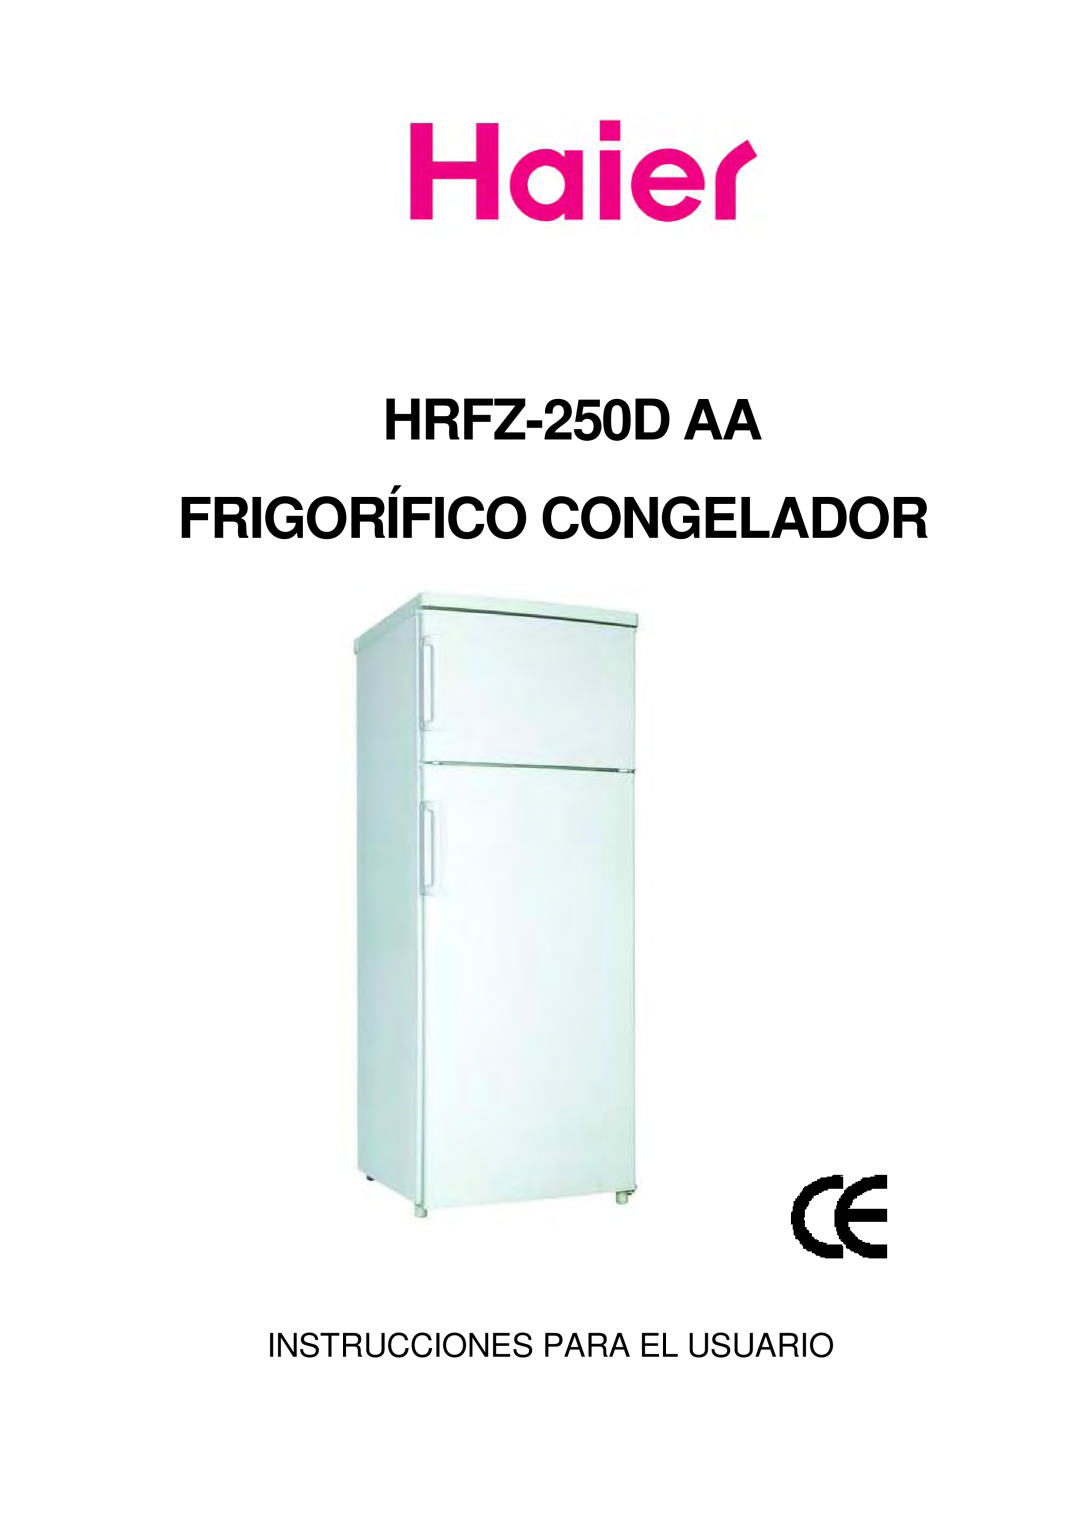 Haier HRFZ-250D AA manual HRFZ-250DAA FRIGORÍFICO CONGELADOR, Instrucciones Para El Usuario 